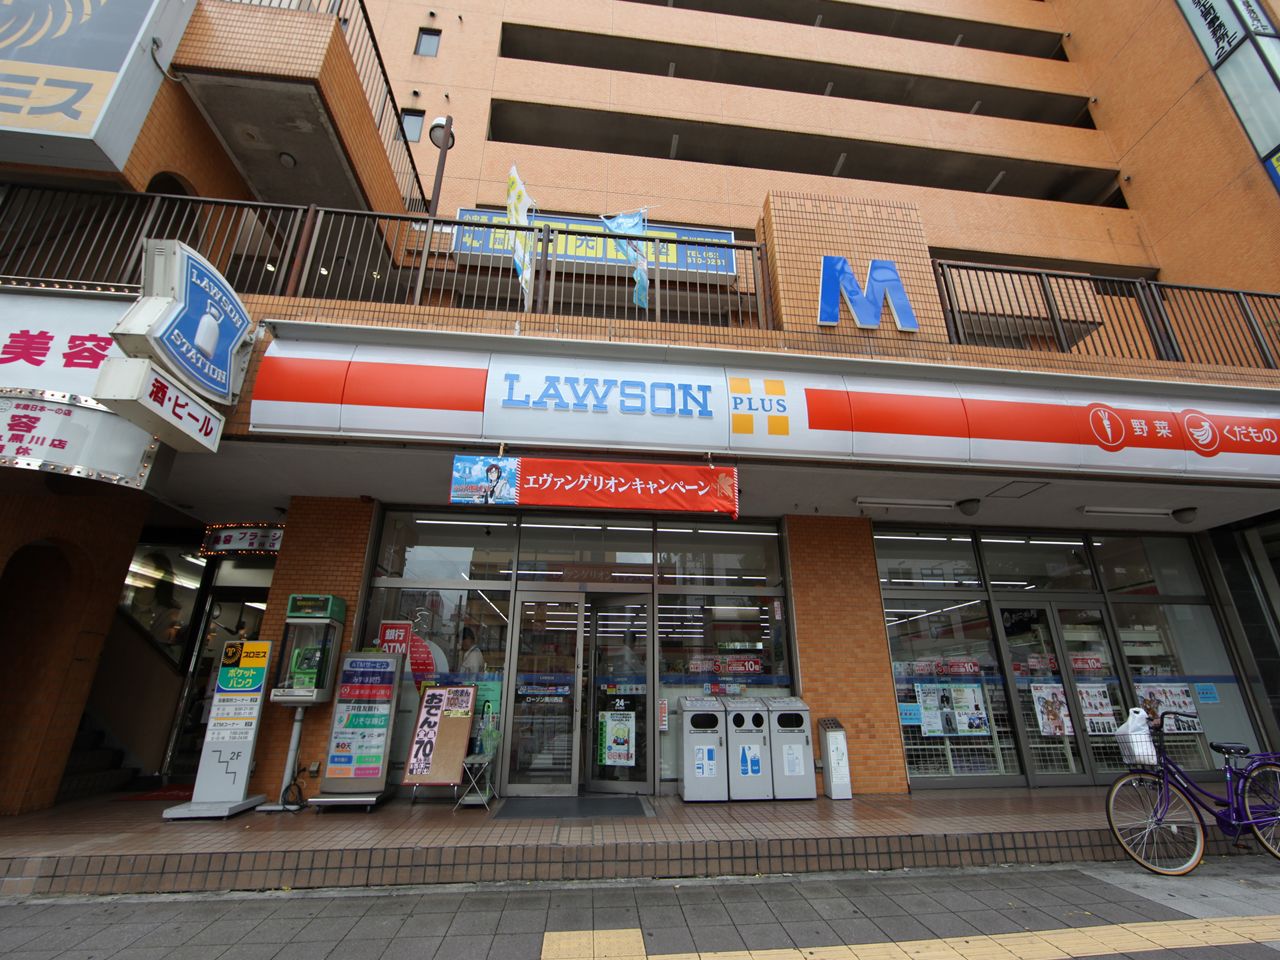 Convenience store. 65m until Lawson L Kurokawa Nishiten (convenience store)